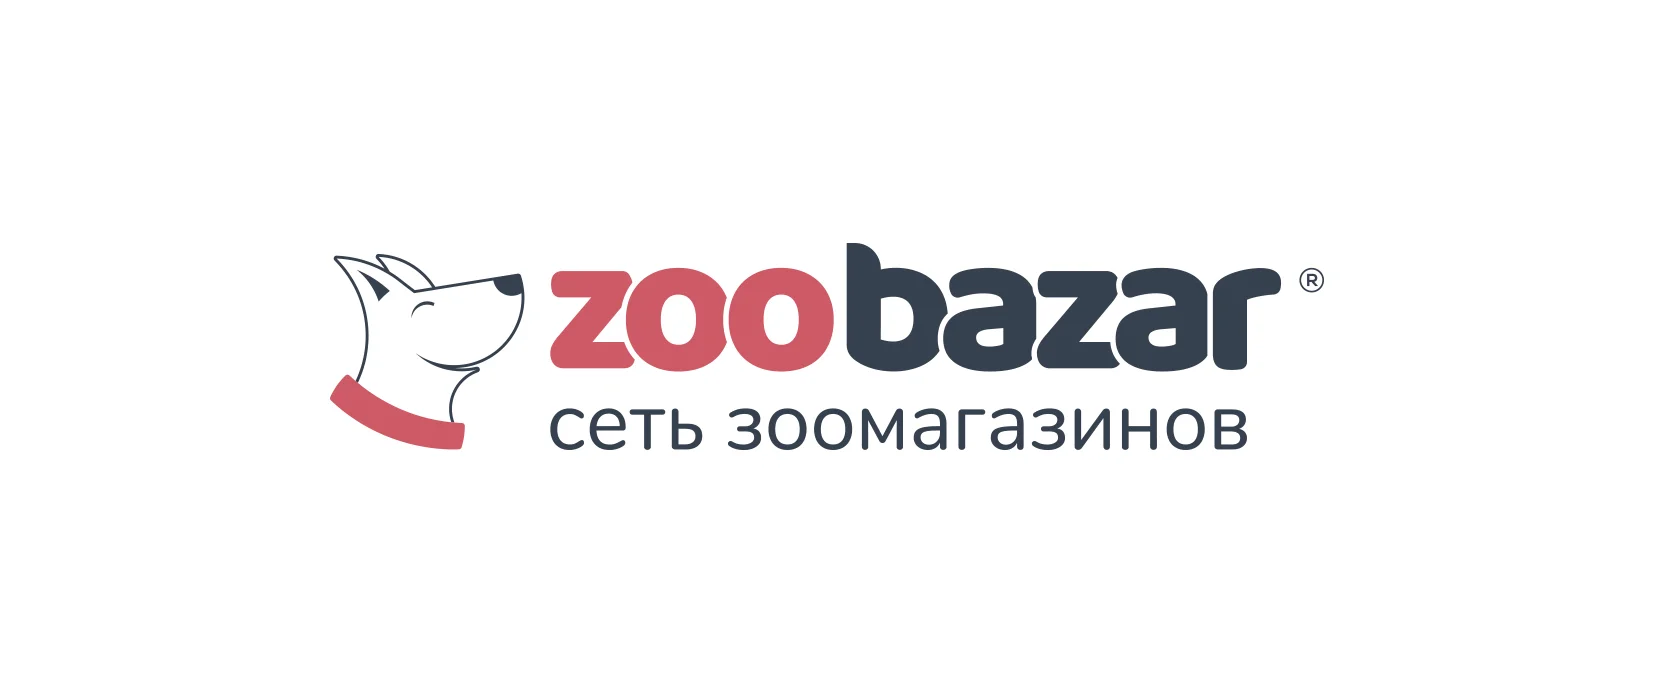 Zoobazar - сеть зоомагазинов